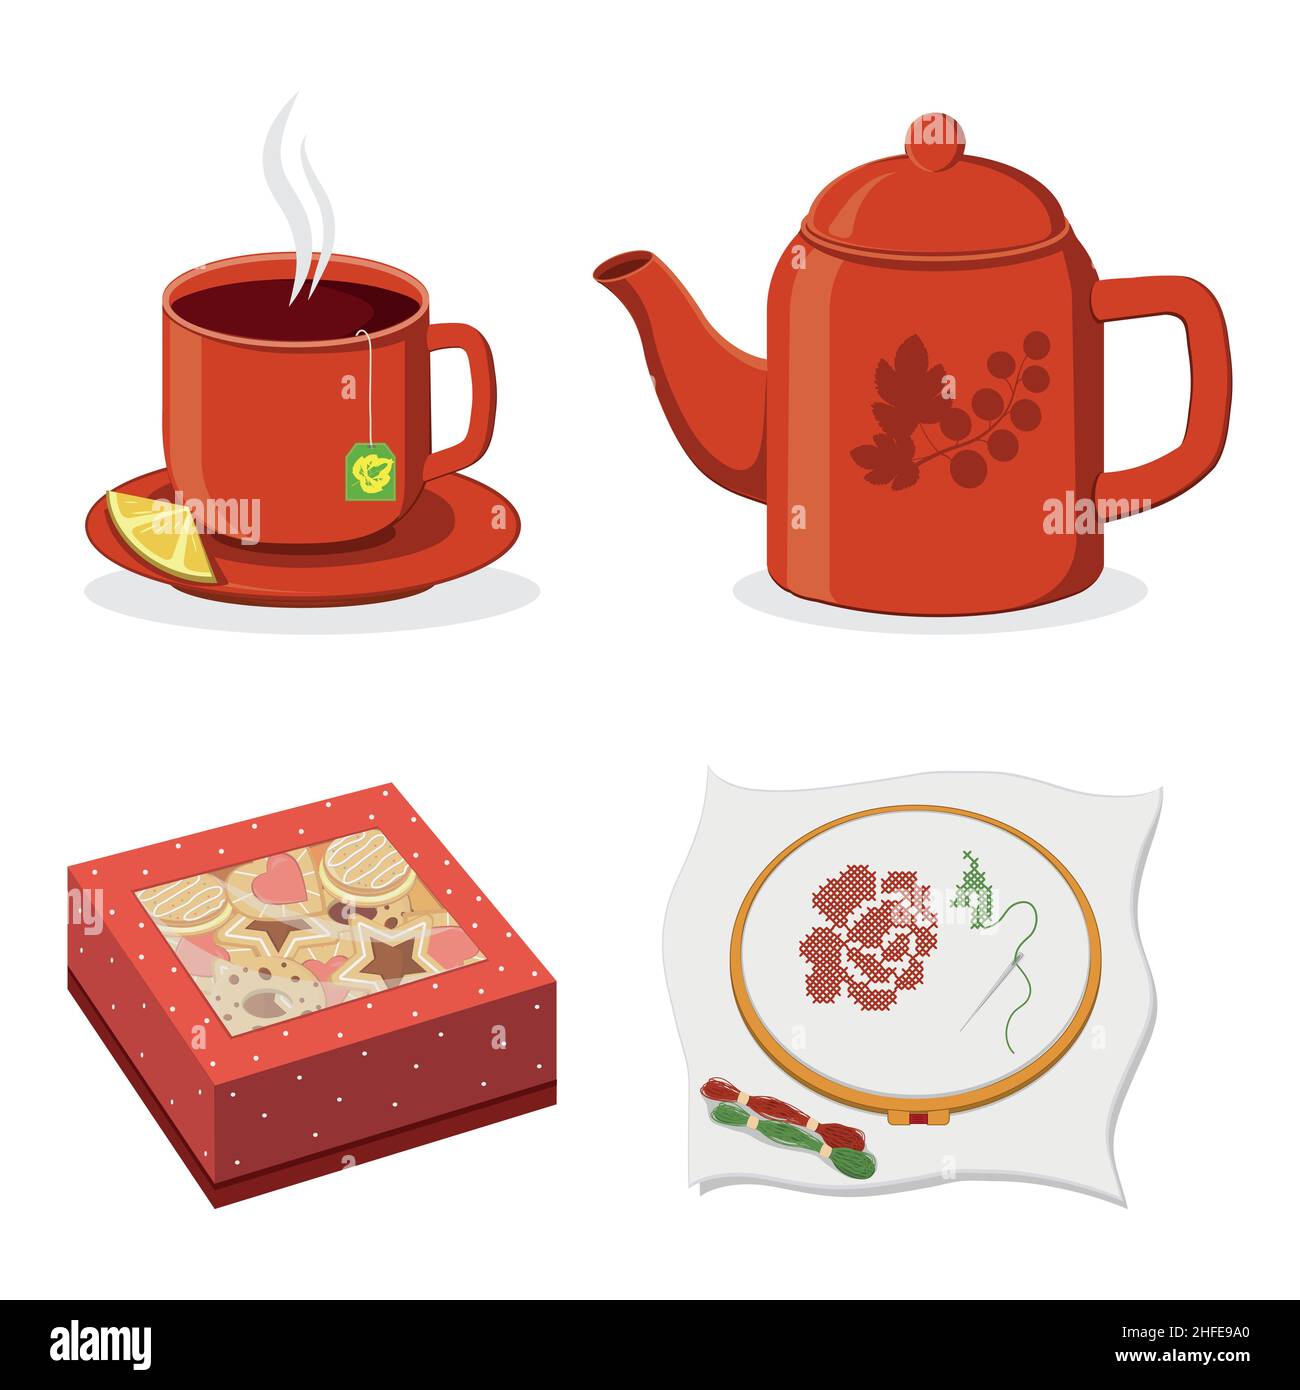 Tazza per la cerimonia del tè, teiera e scatola biscotti, illustrazione isolata del vettore colore. Illustrazione Vettoriale